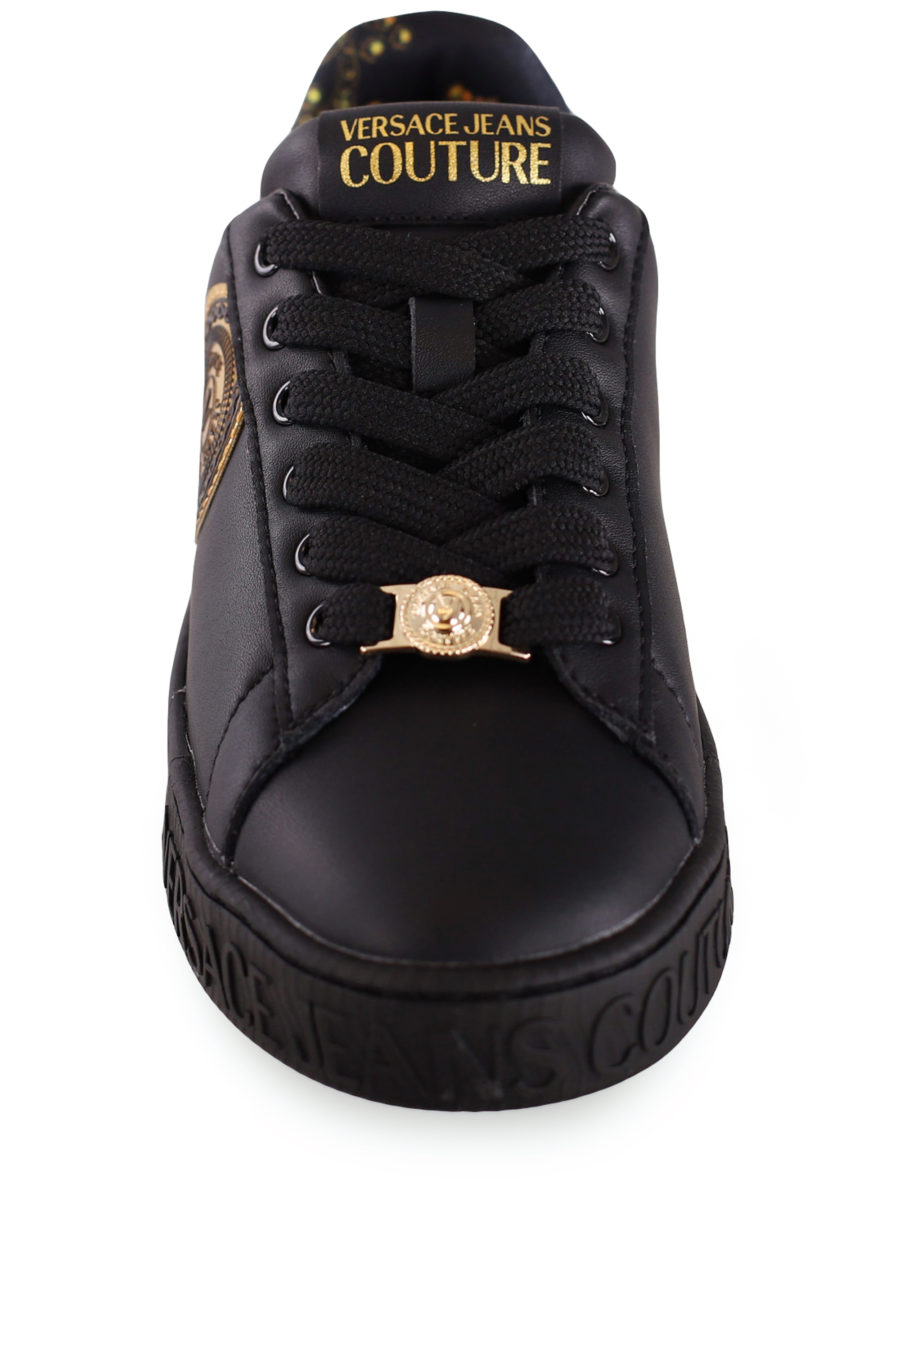 Zapatillas negras con logo dorado - IMG 8215 copia